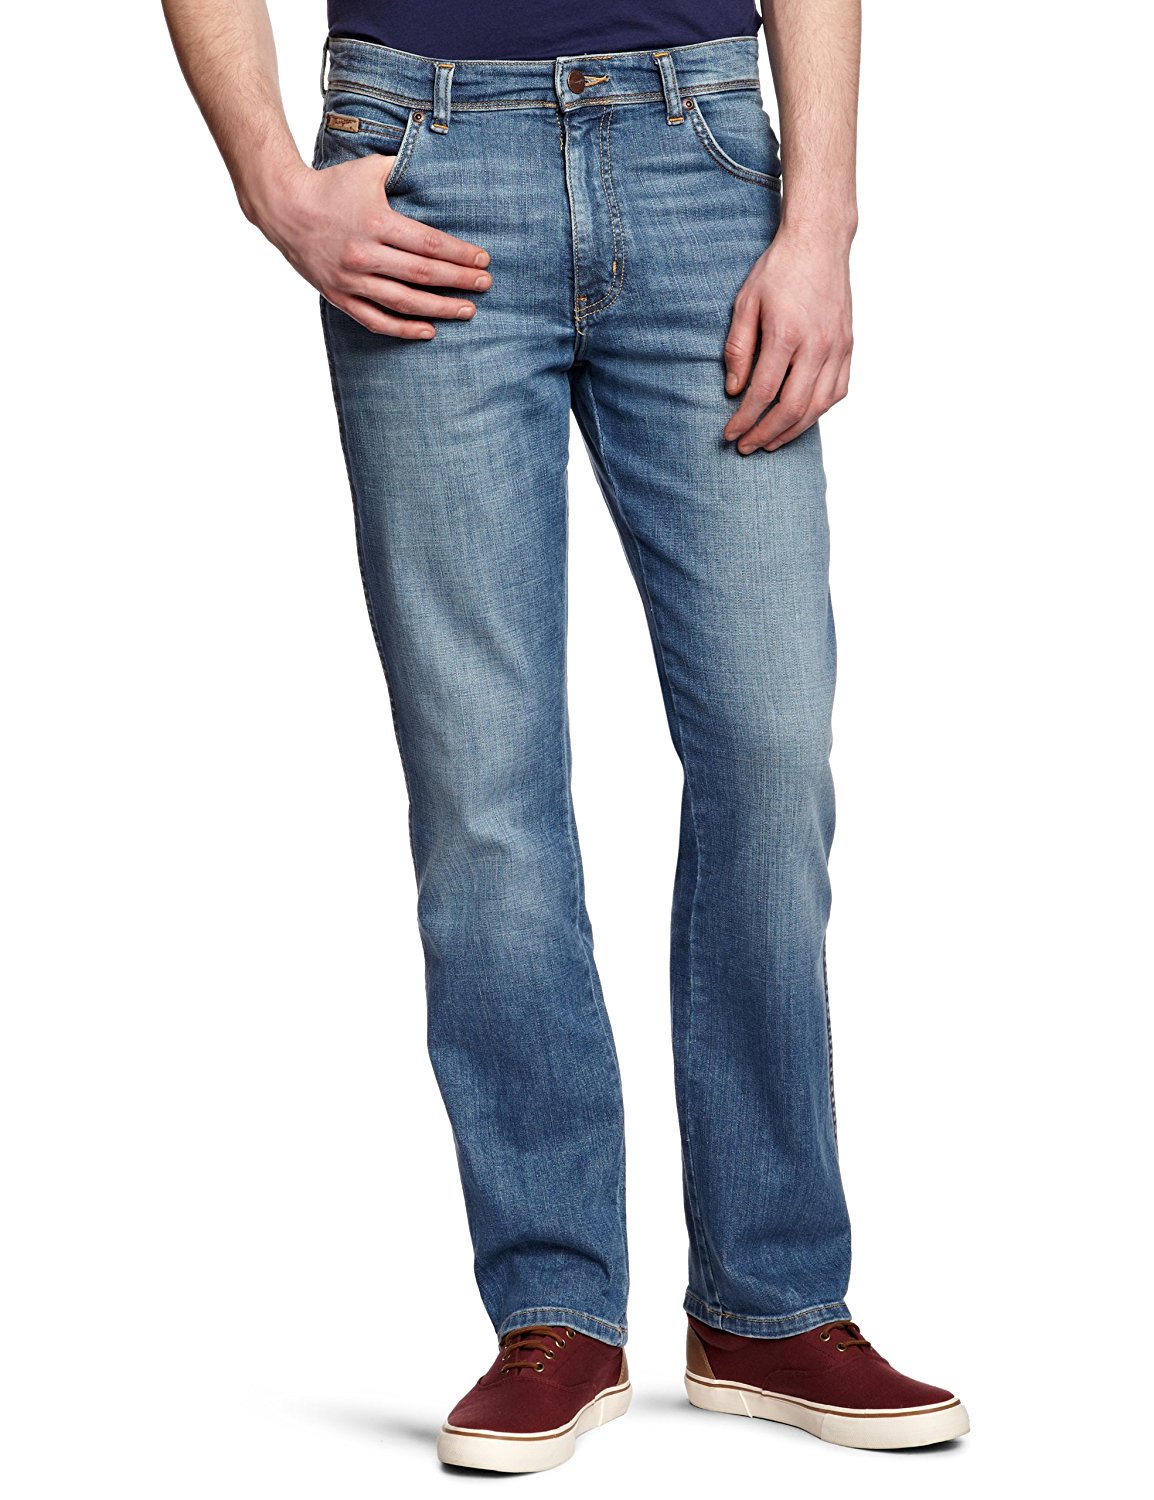 Grosir Distributor Celana Jeans Wrangler 06 Harga Murah Bagus Berkualitas